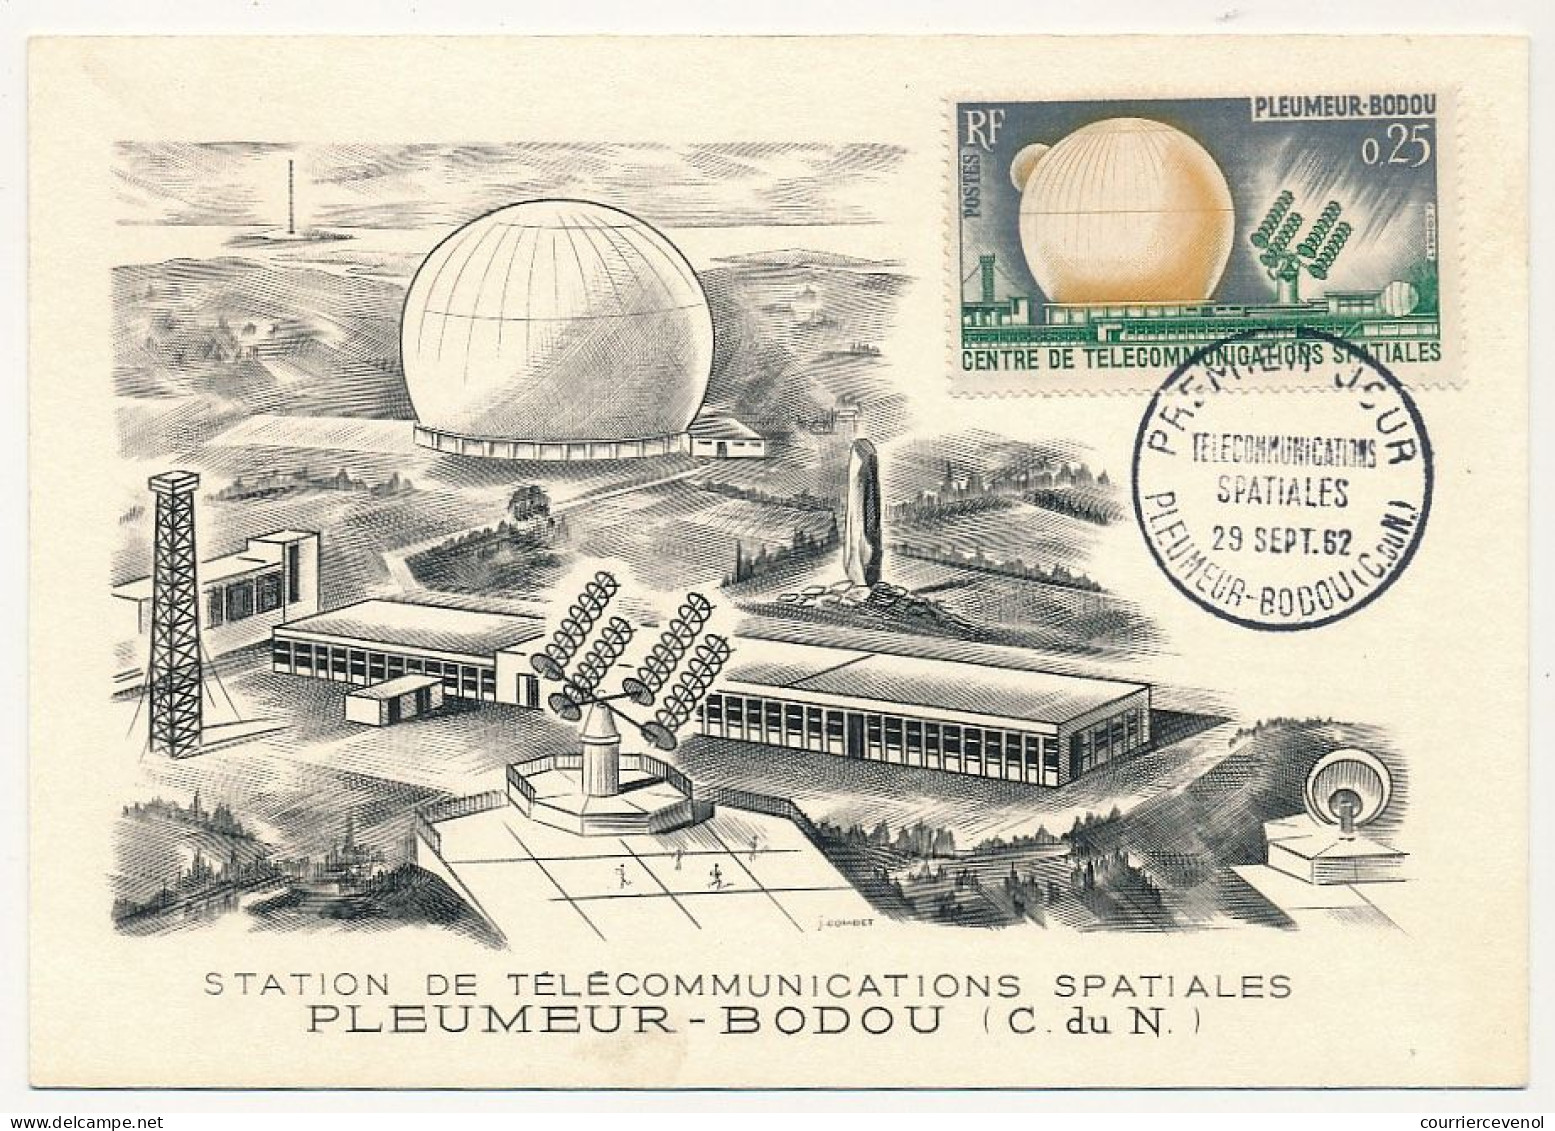 FRANCE - 2 Cartes Maximum - 0,25 Et 0,50 - Première Liaison Télévision Par Satellite - Pleumeur Bodou - 28/9/1962 - 1960-1969